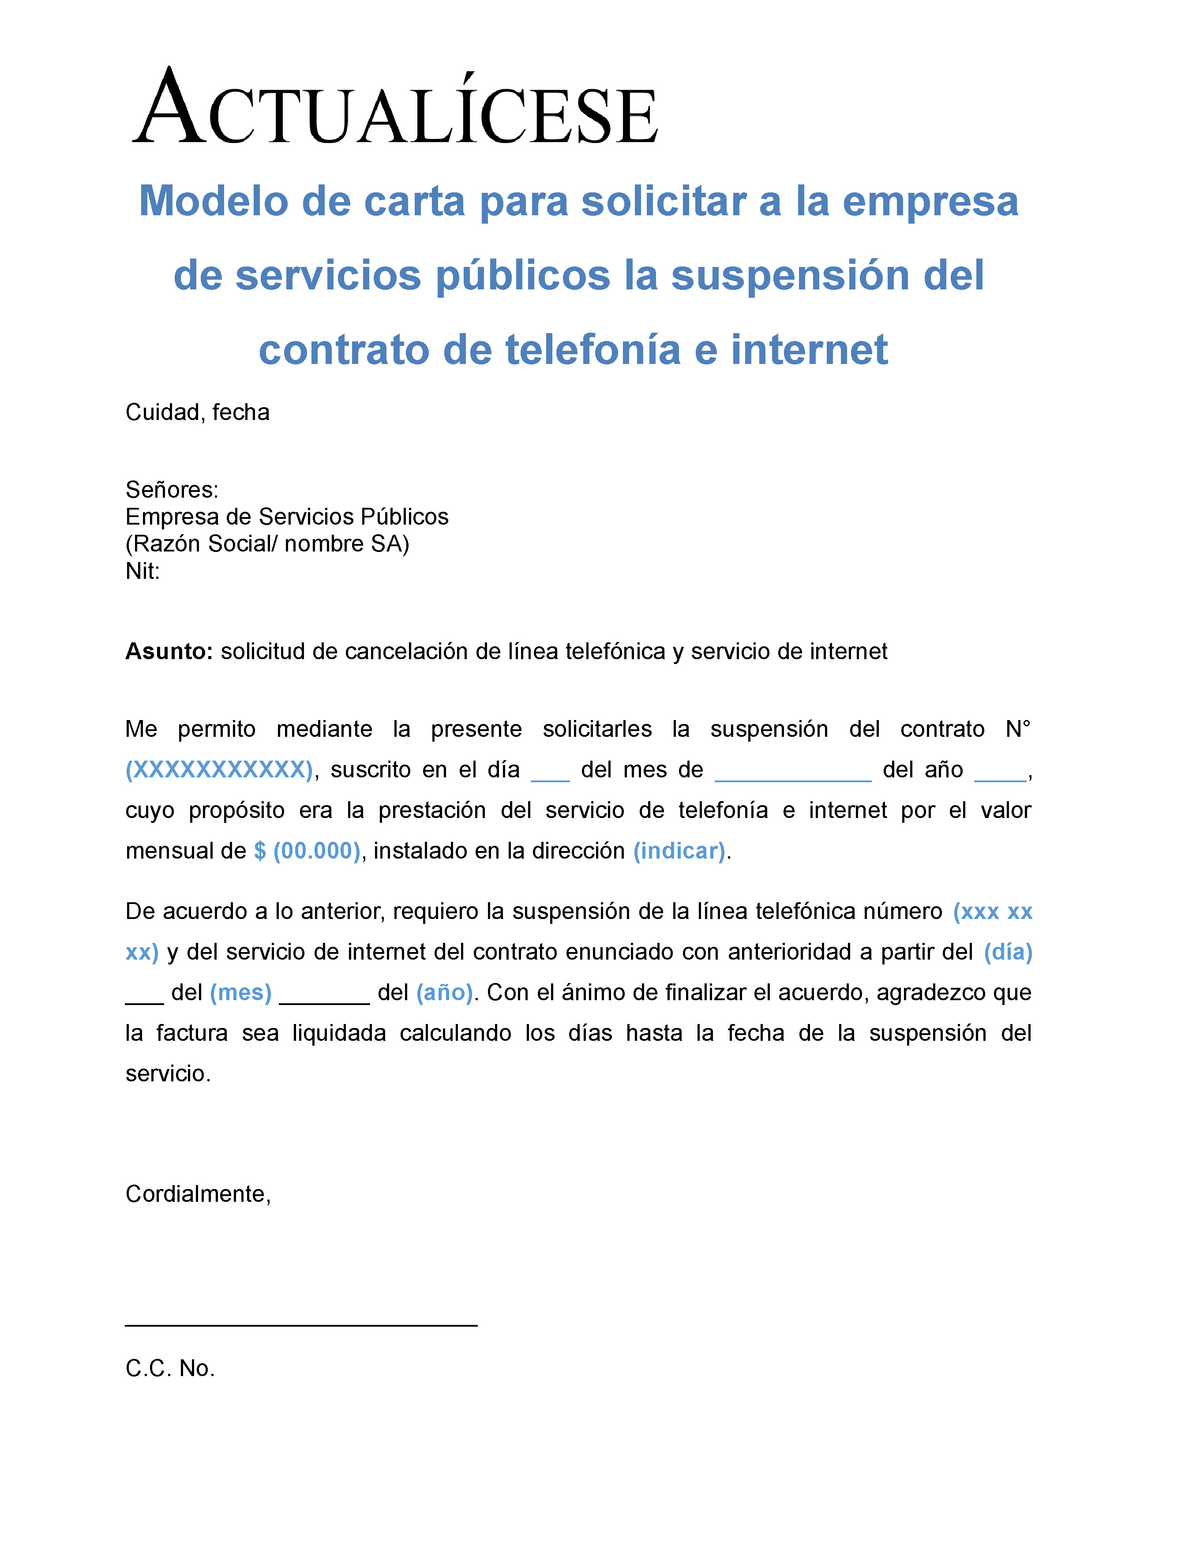 Carta suspension contrato telefonico internet empresa servicios publicos -  Modelo de carta para - Studocu